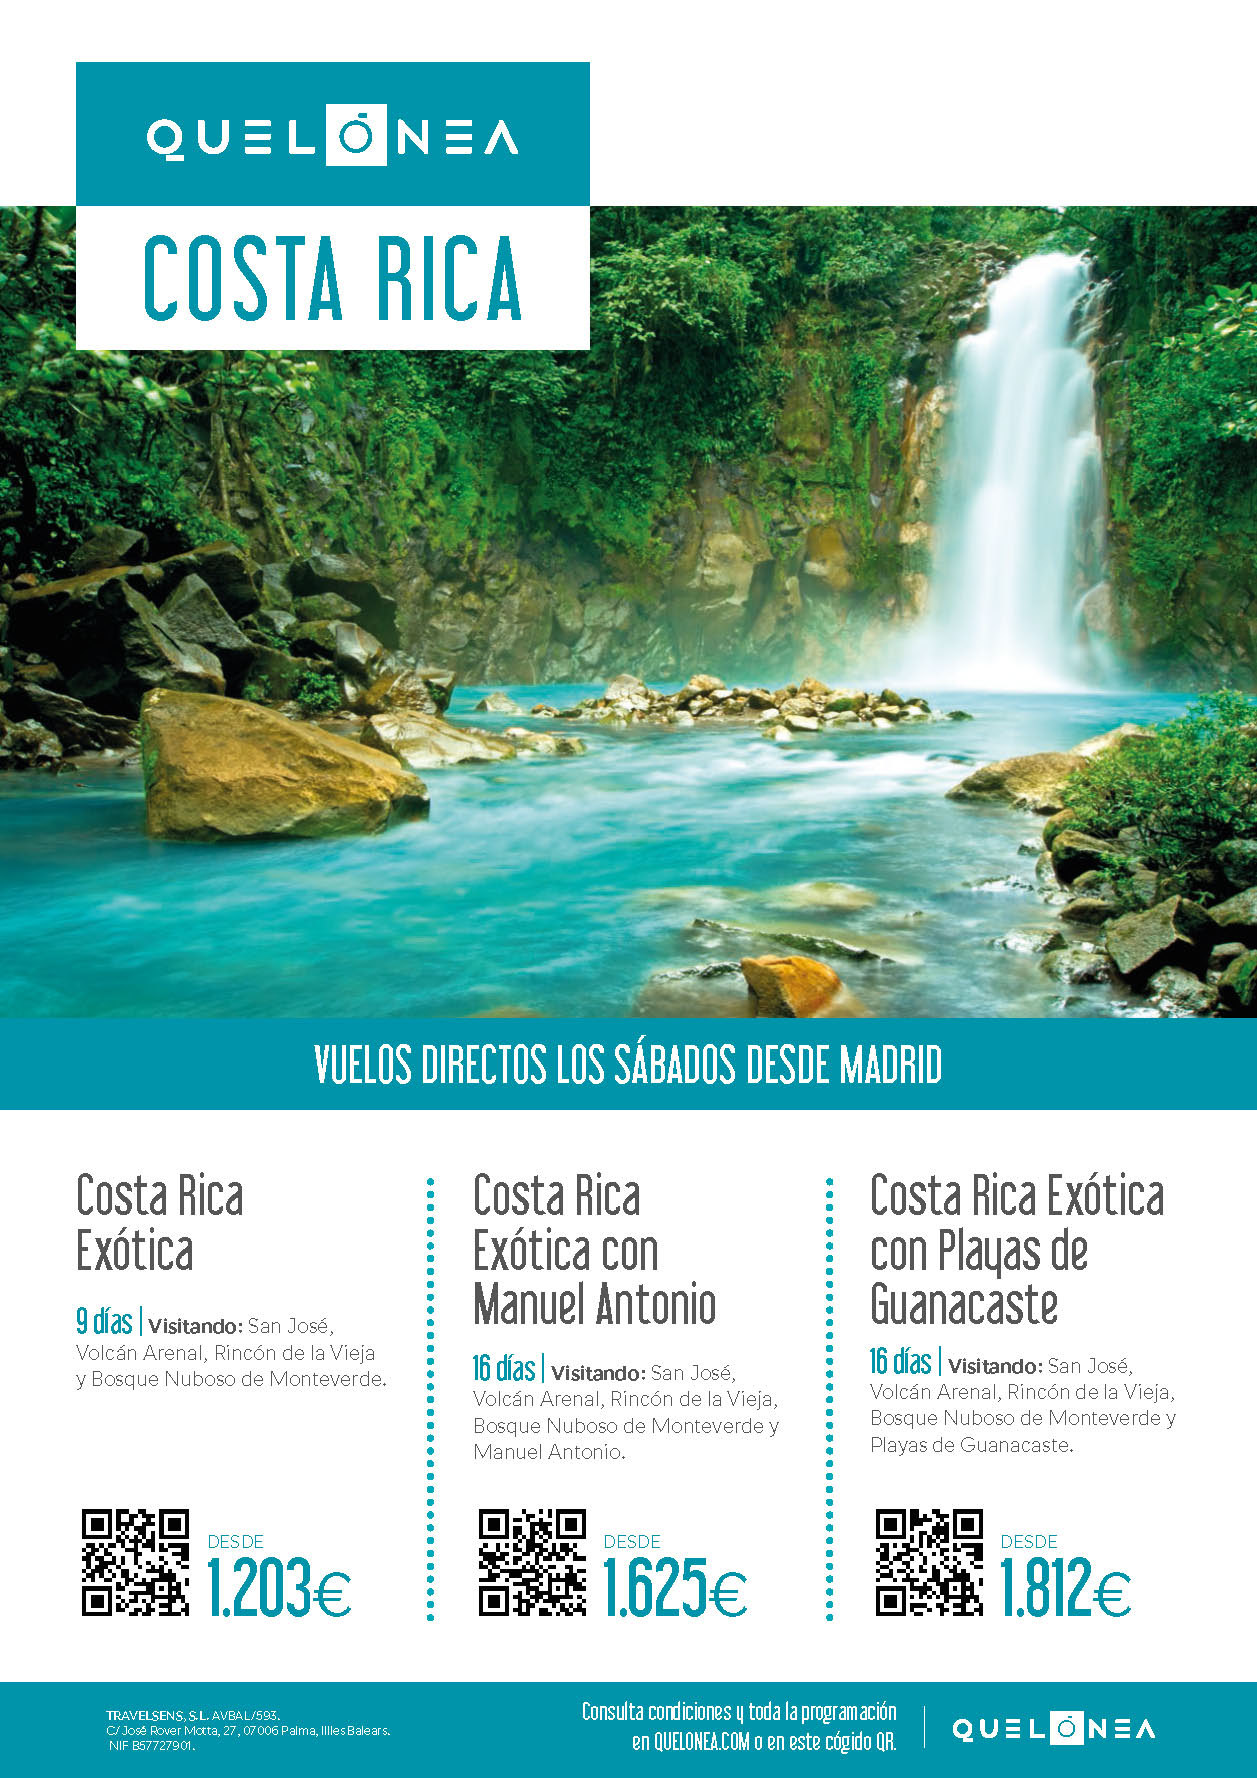 Ofertas Quelonea Costa Rica Exotica con Manuel Antonio o Playas de Guanacaste 2022 16 dias vuelo directo desde Madrid